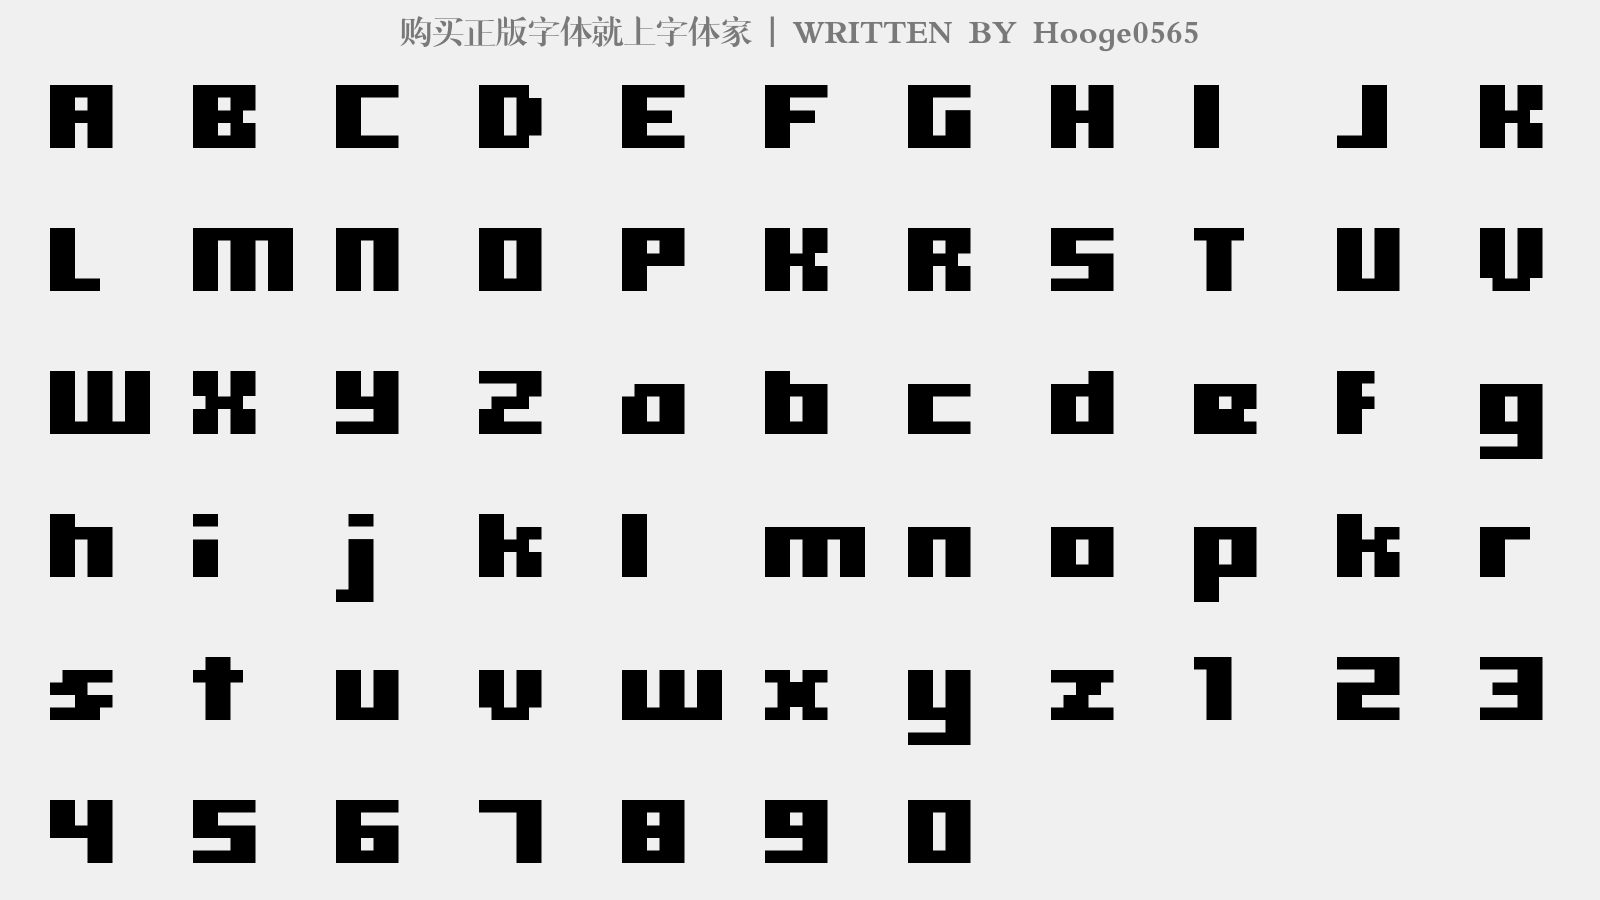 Hooge0565 - 大写字母/小写字母/数字